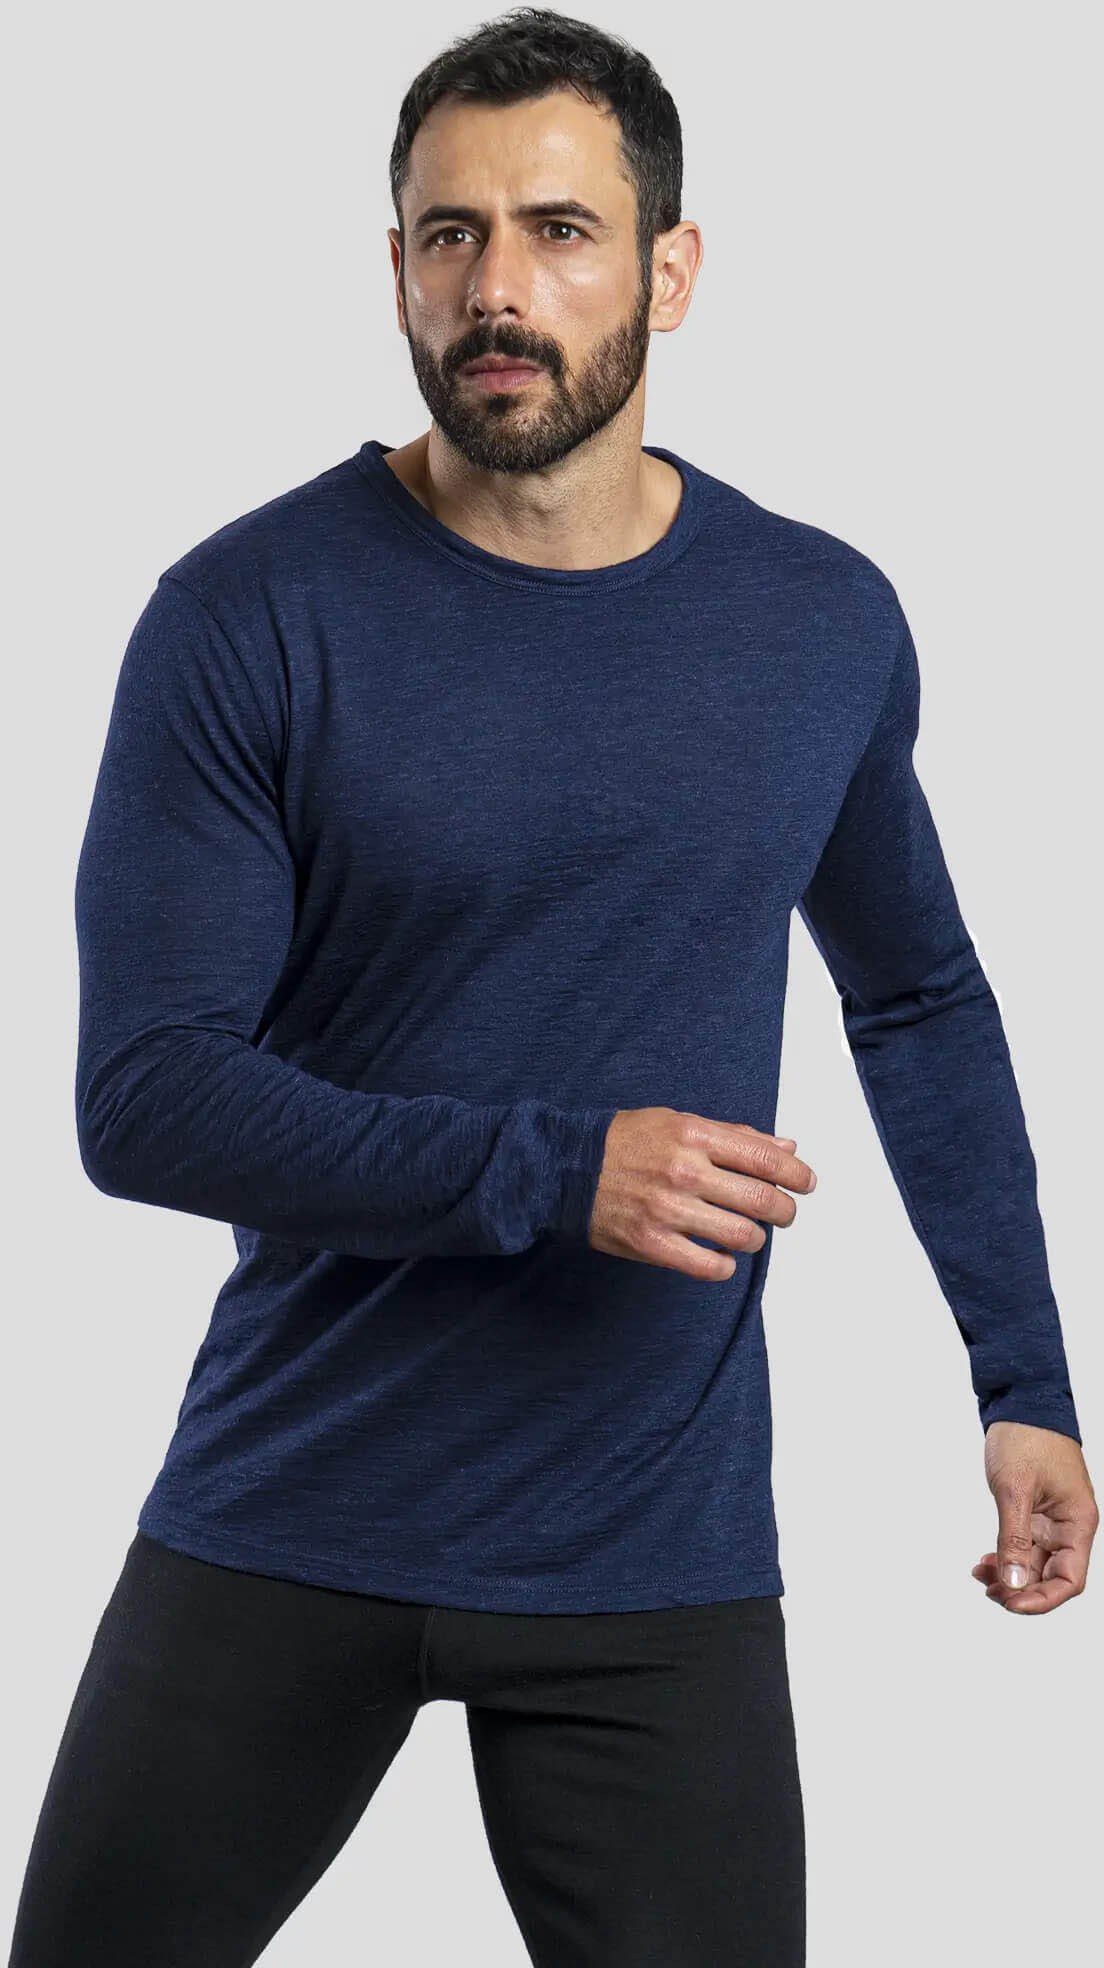 160 Сверхлегкая базовая рубашка с длинными рукавами из шерсти альпаки — мужская Arms of Andes, синий